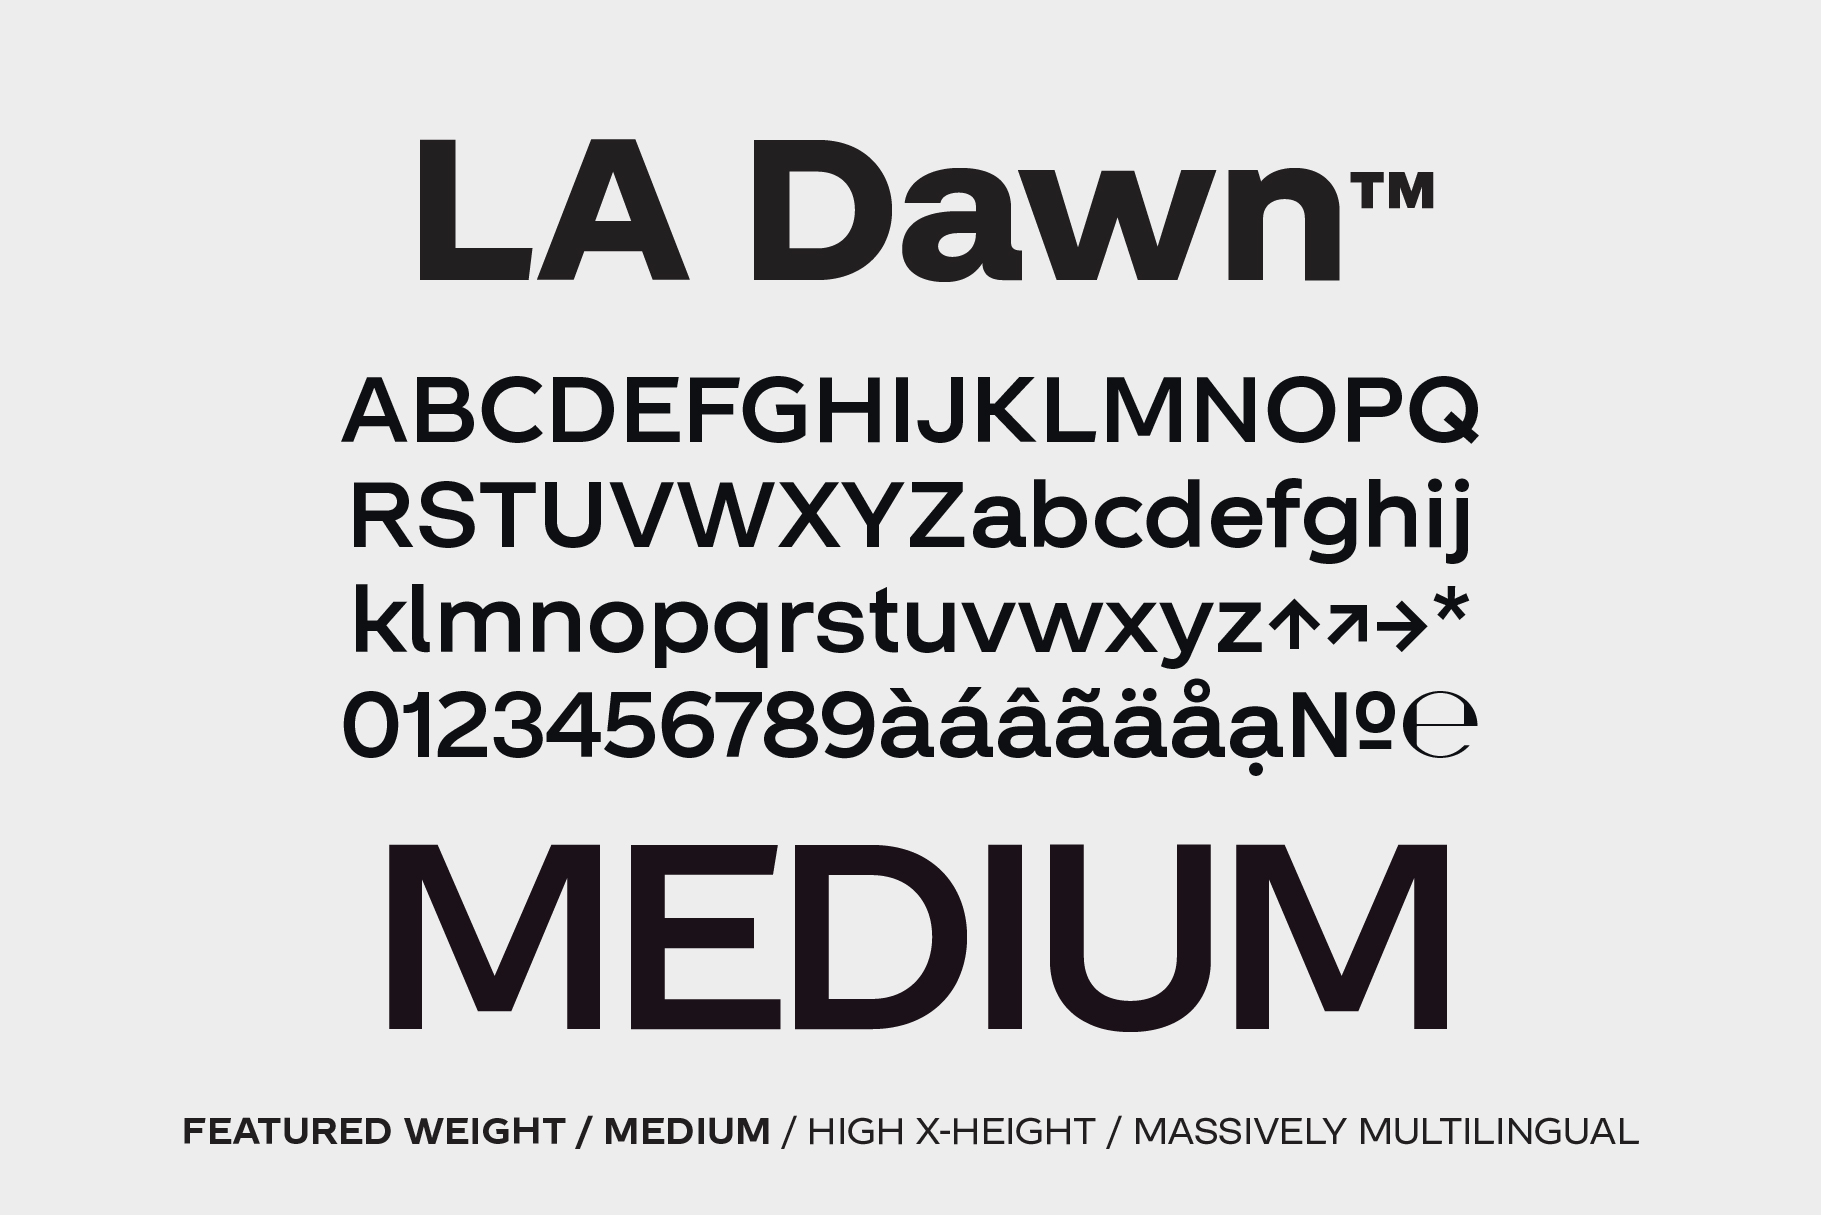 LA Dawn Medium font